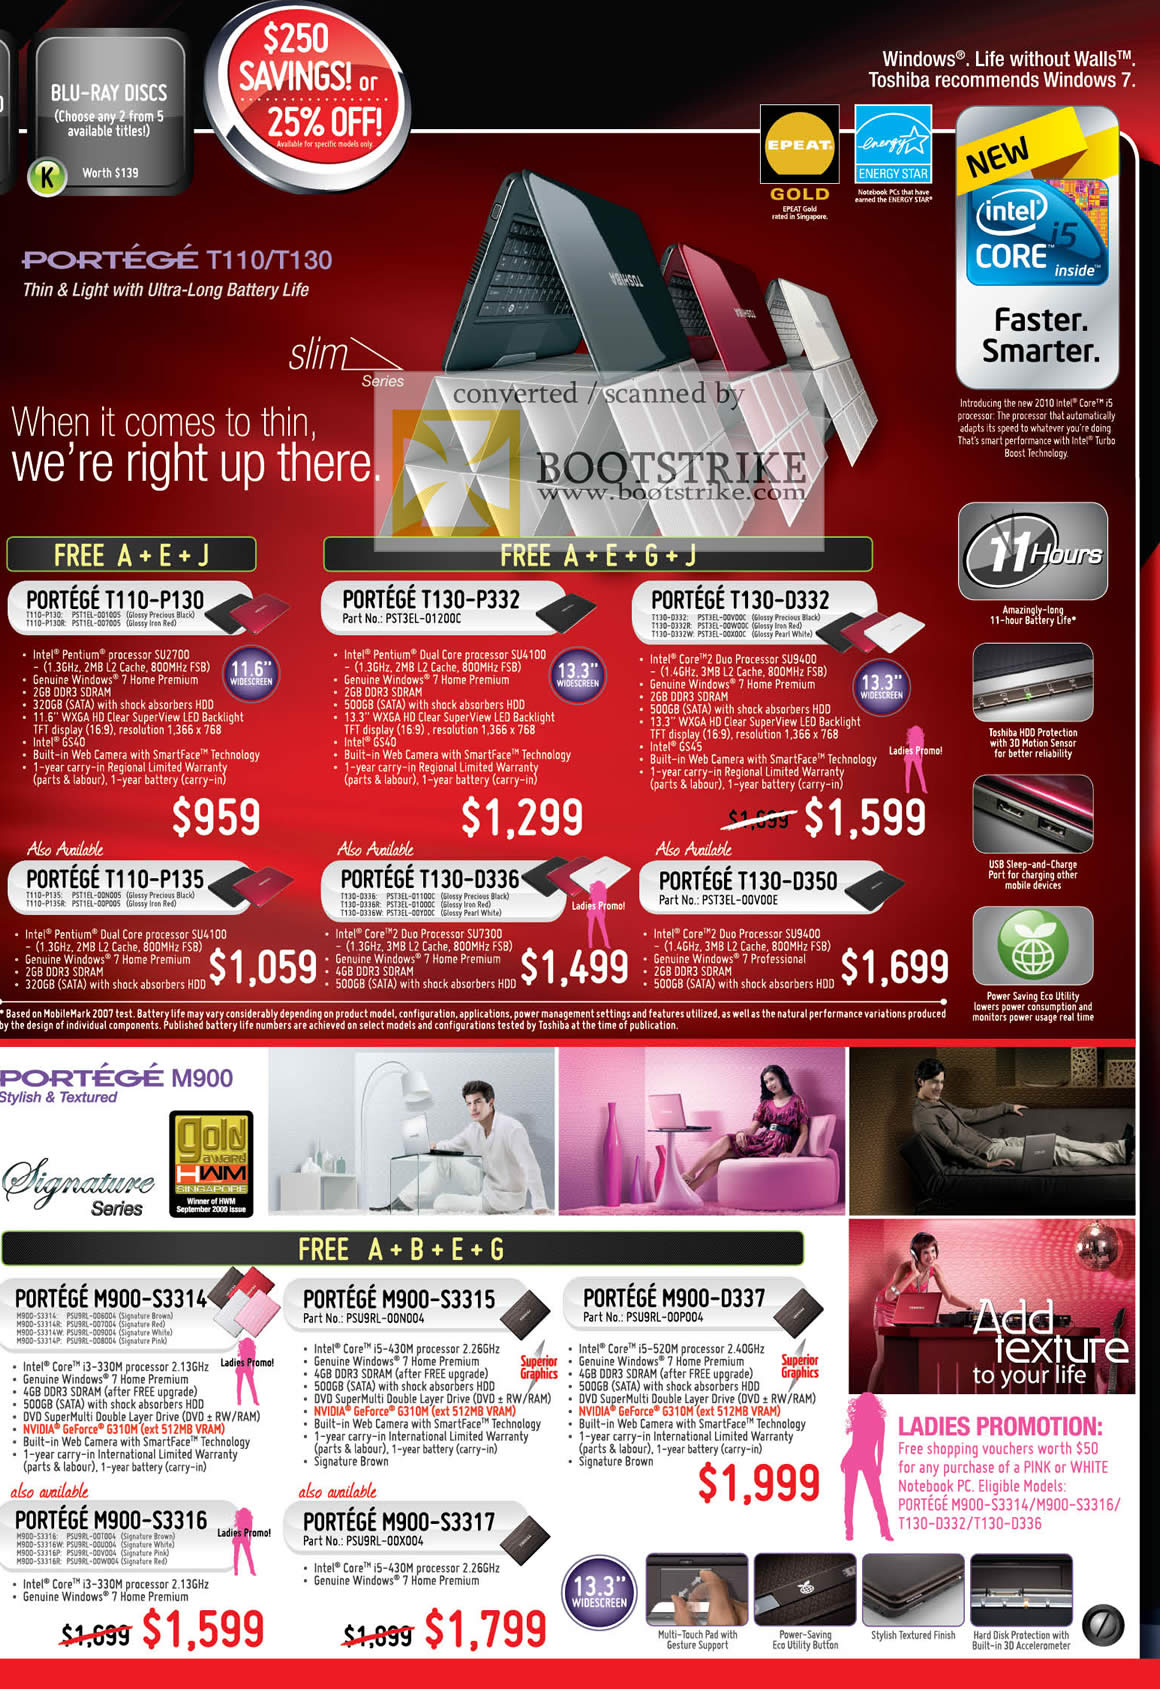 PC Show 2010 price list image brochure of Toshiba Notebooks Portege T110 T130 P135 D336 D350 M900 S3314 S3315 D337 S3316 S3317